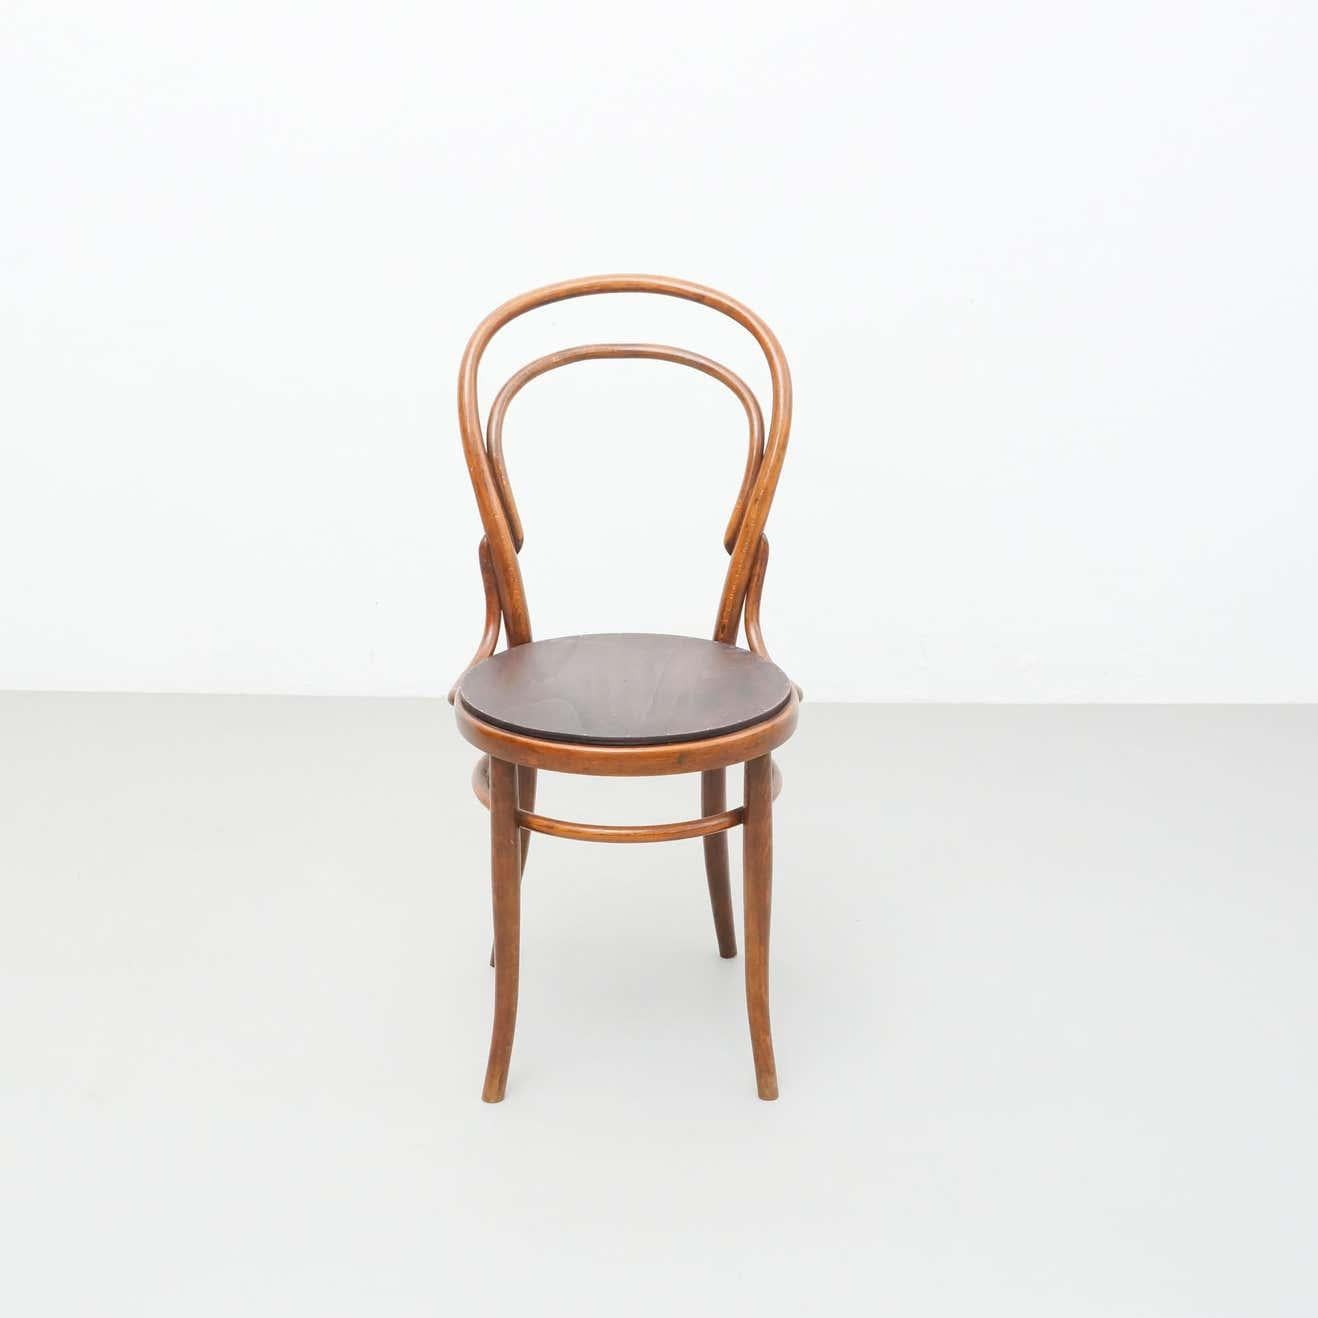 Chaise en bois courbé d'un designer et fabricant inconnu dans le style de Thonet.
Fabriqué en Autriche, vers 1930.

En état d'origine, avec une légère usure due à l'âge et à l'utilisation, préservant une belle patine.
Le siège en bois a été ajouté